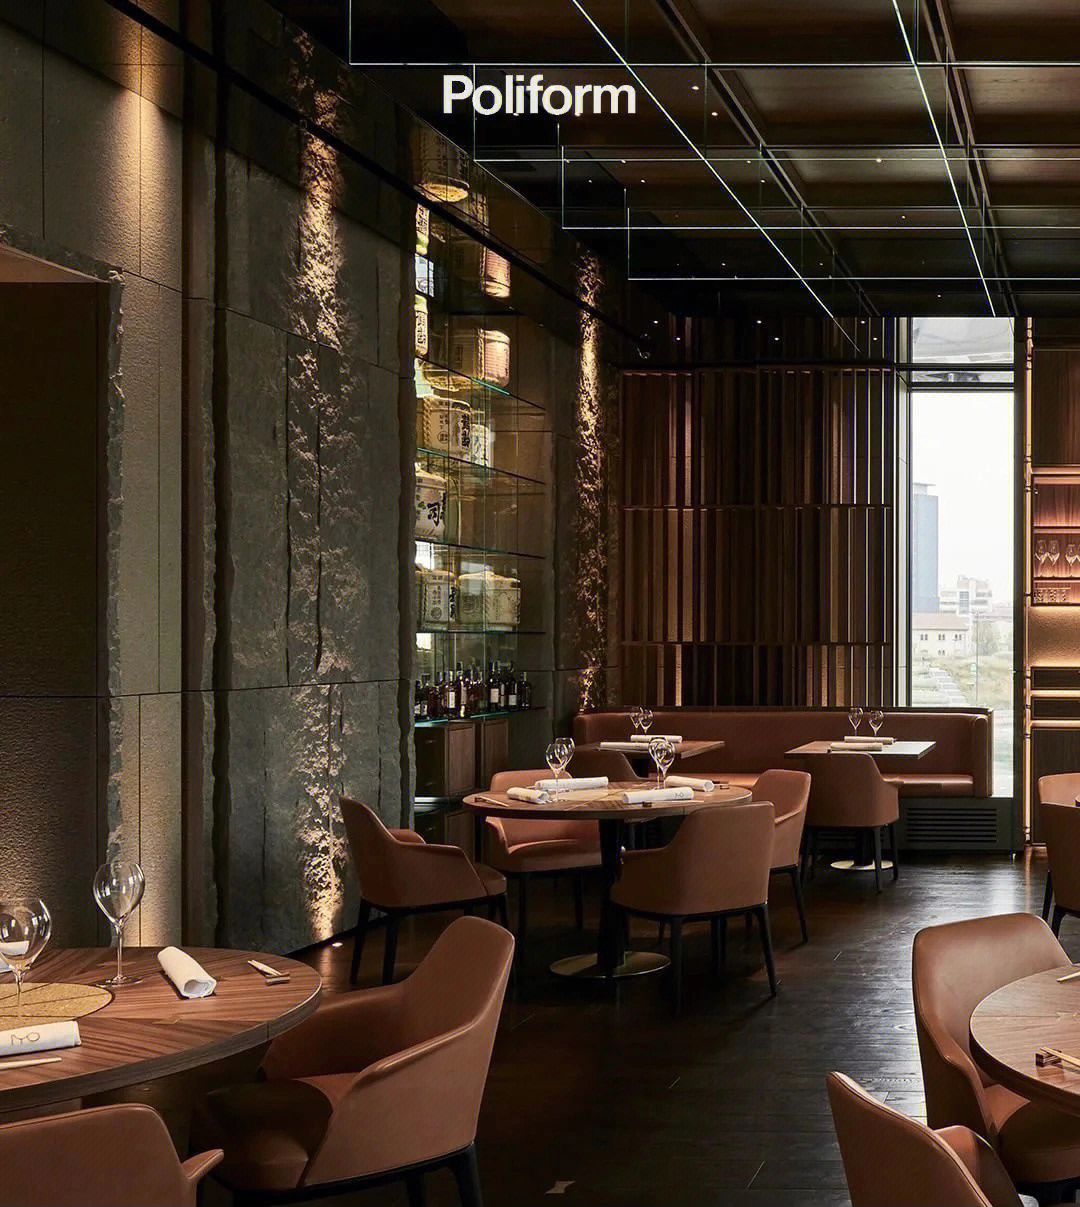 poliform位于米兰市中心的米其林星级餐厅